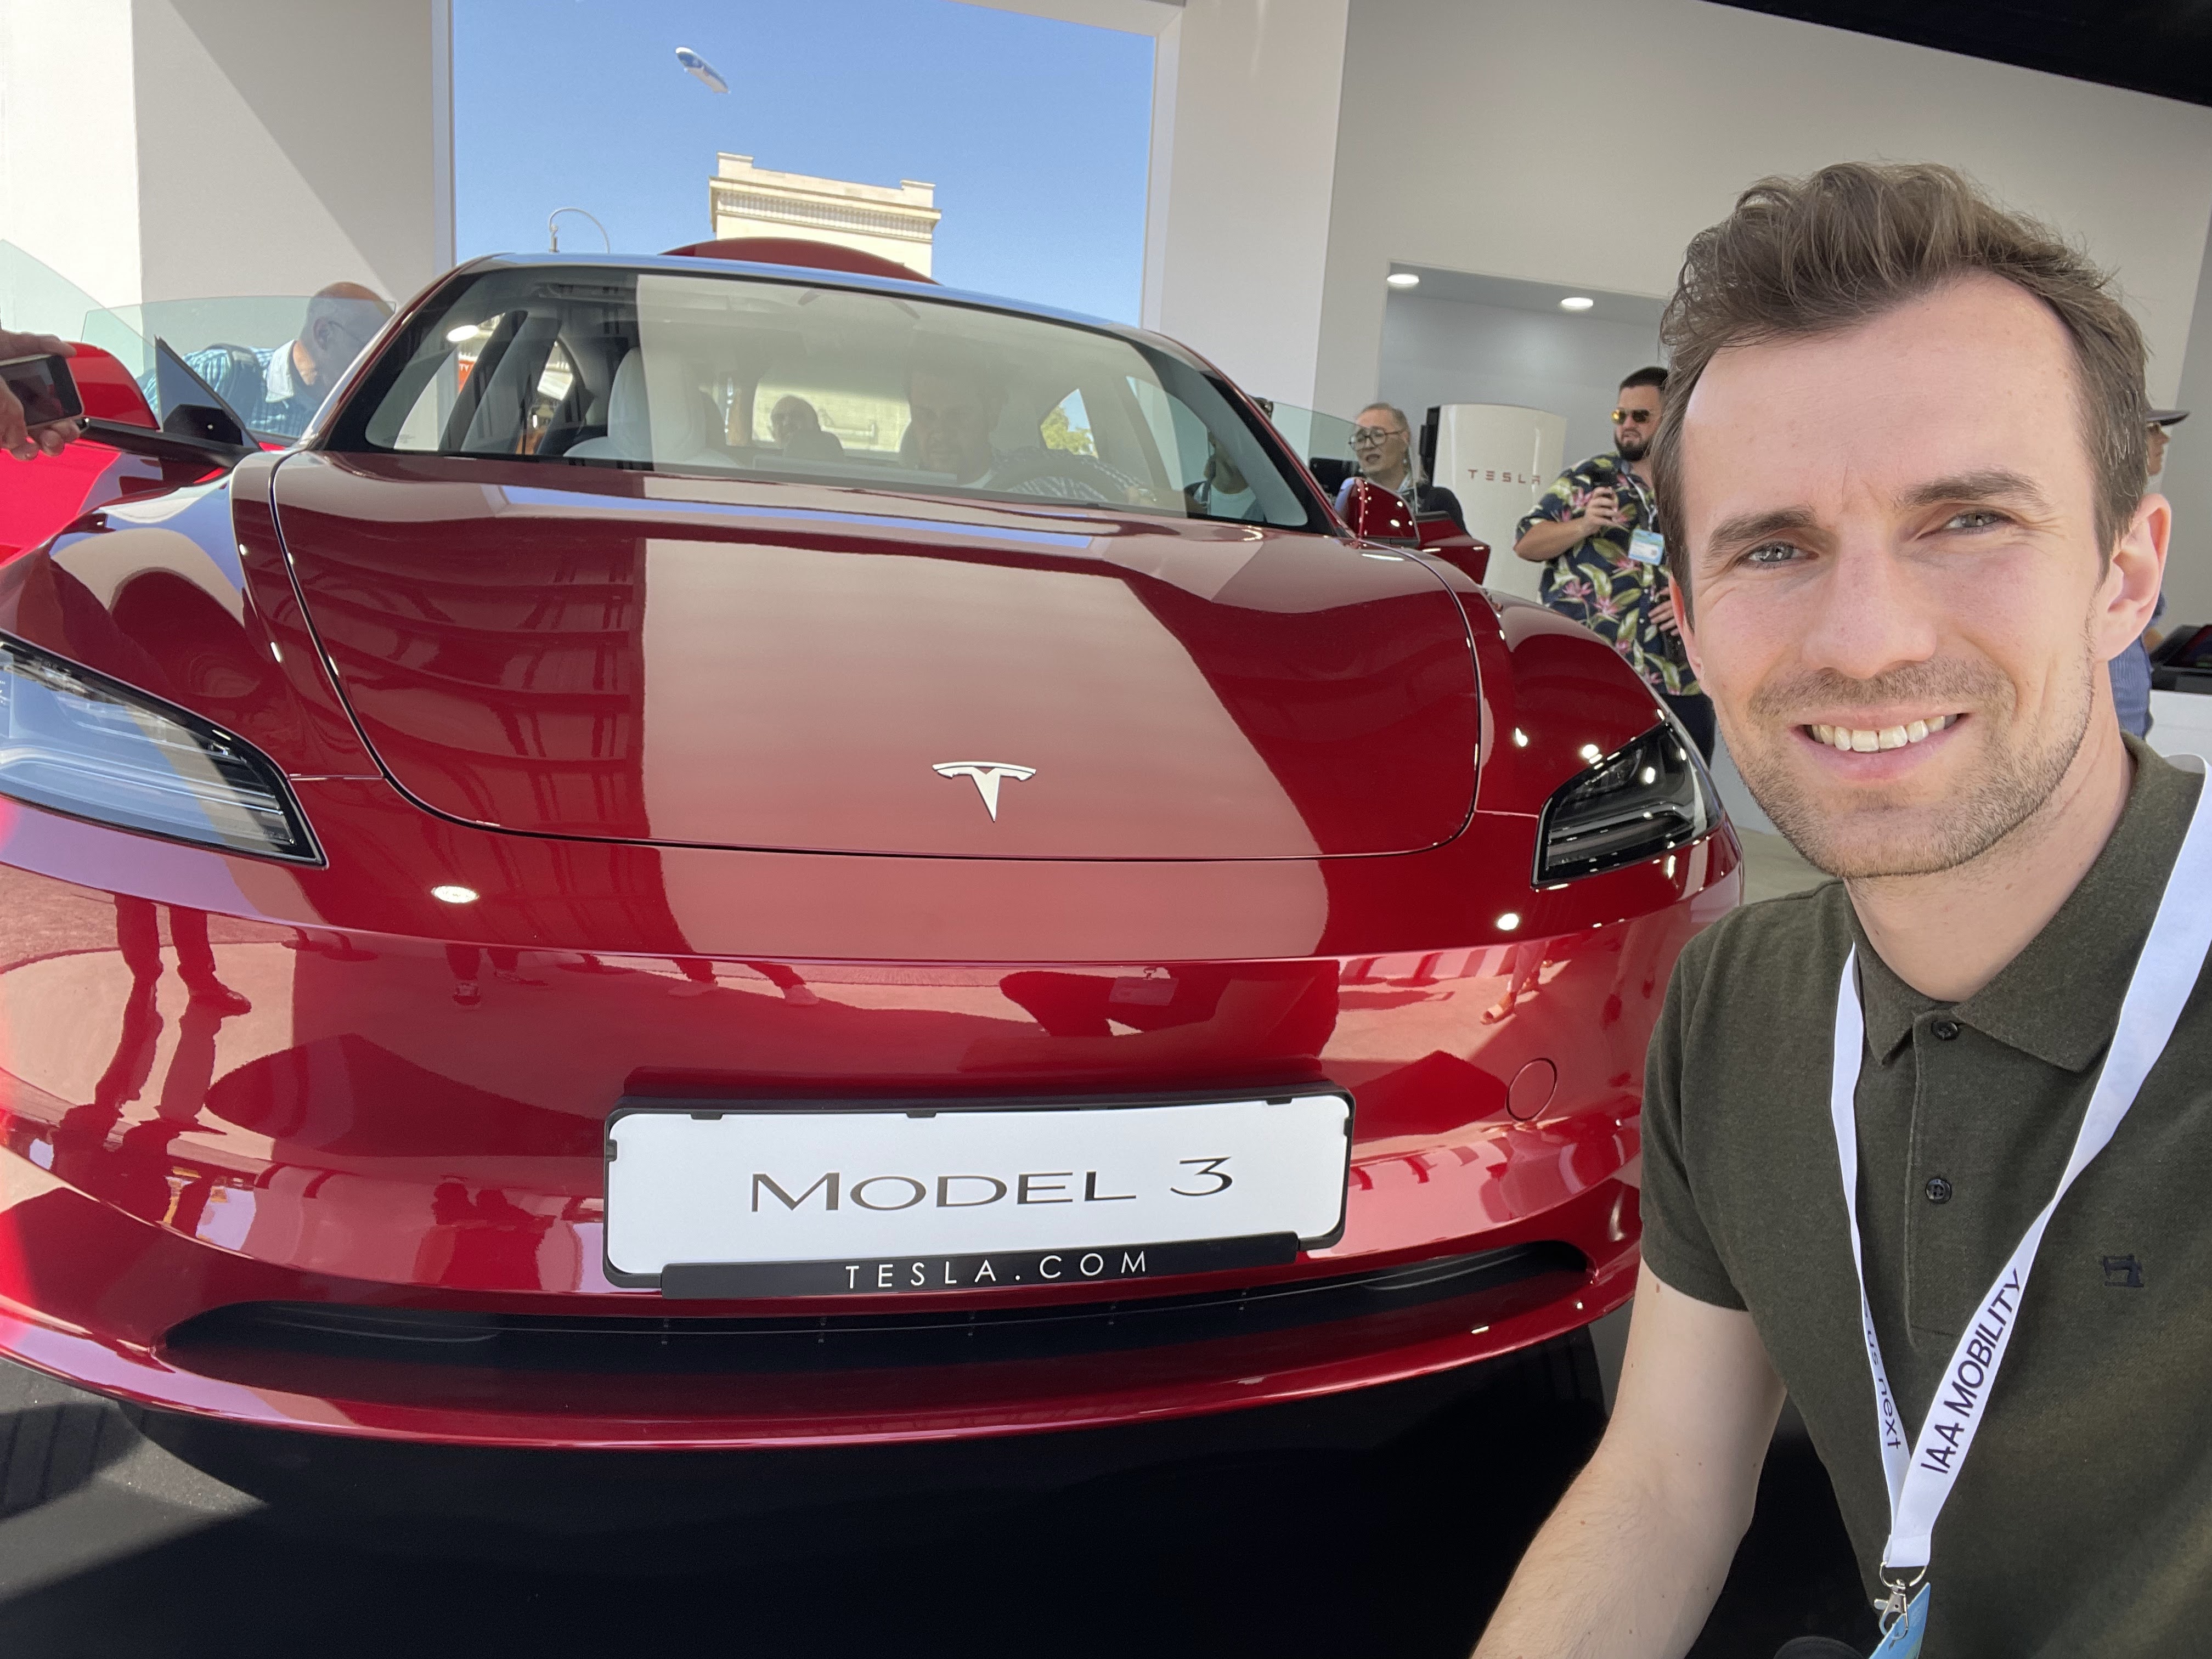 Obwohl Tesla grundsätzlich eher selten auf Automessen vertreten ist, hat das Unternehmen dieses Jahr auf der IAA sein überarbeitetes “Model 3” präsentiert, das einige interessante Neuerungen wie belüftete Sitze und einen Monitor für die hintere Sitzreihe enthält.